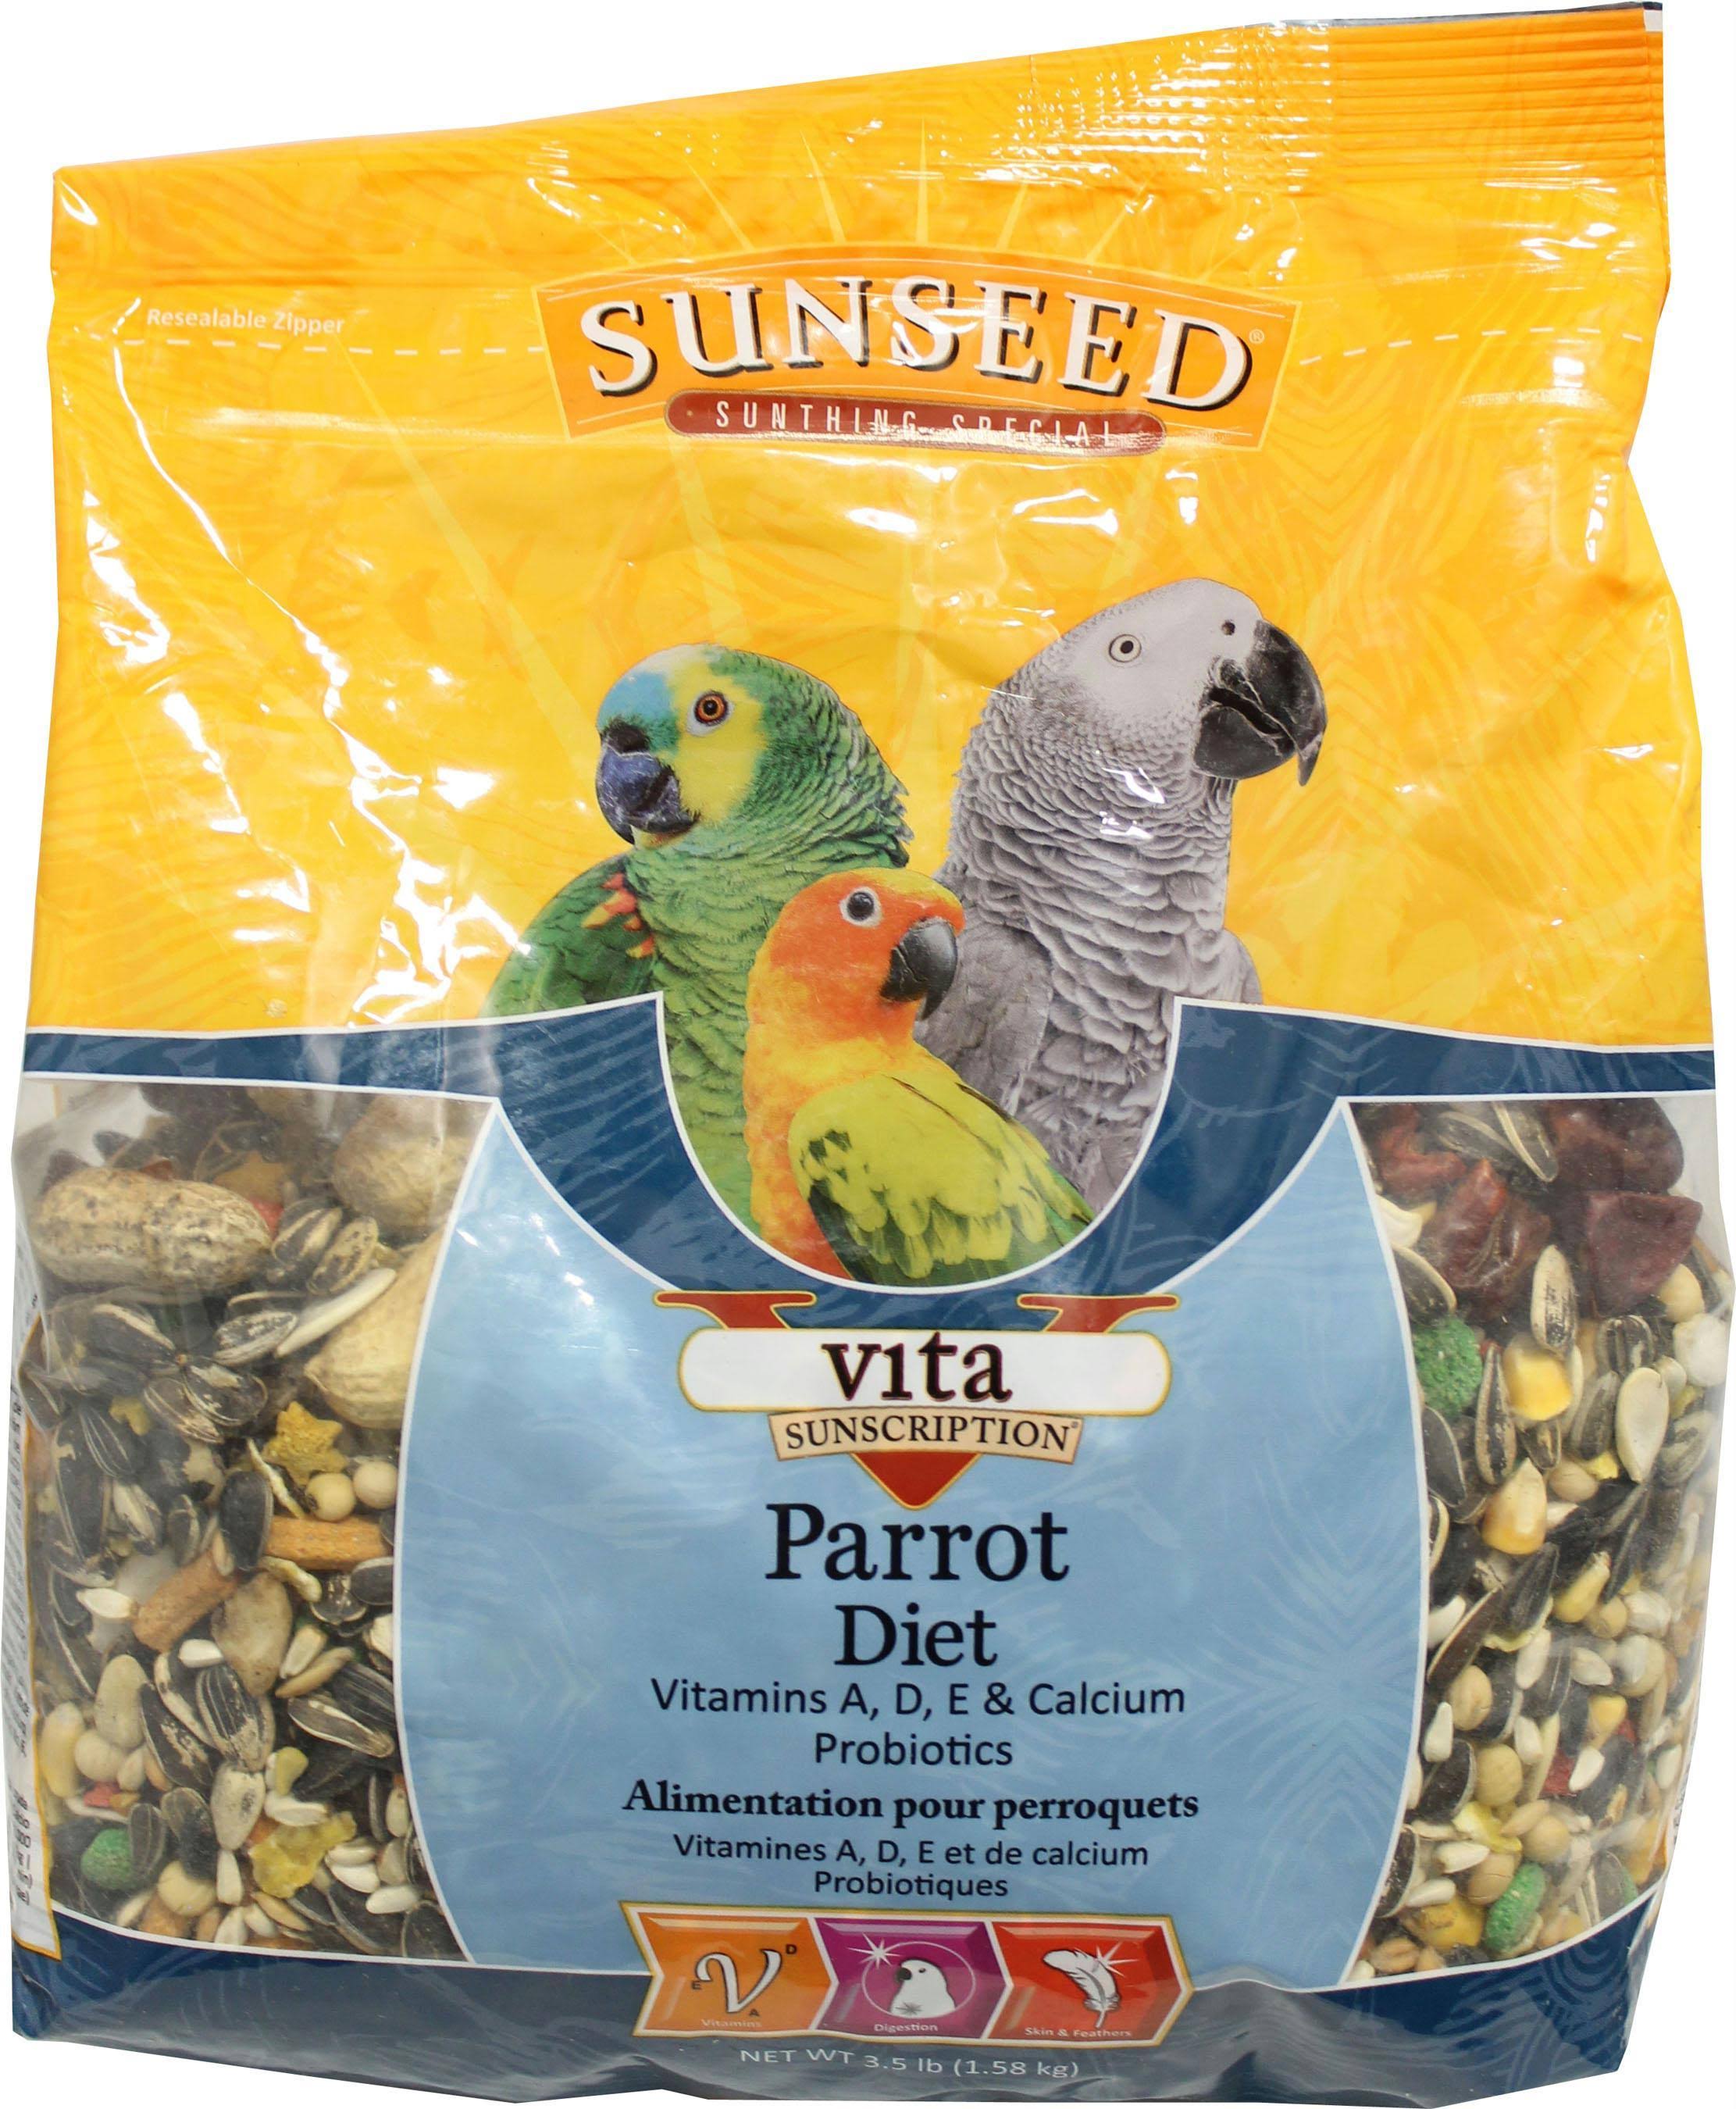 Sunseed Vita Sunscription Parrot 3.5#